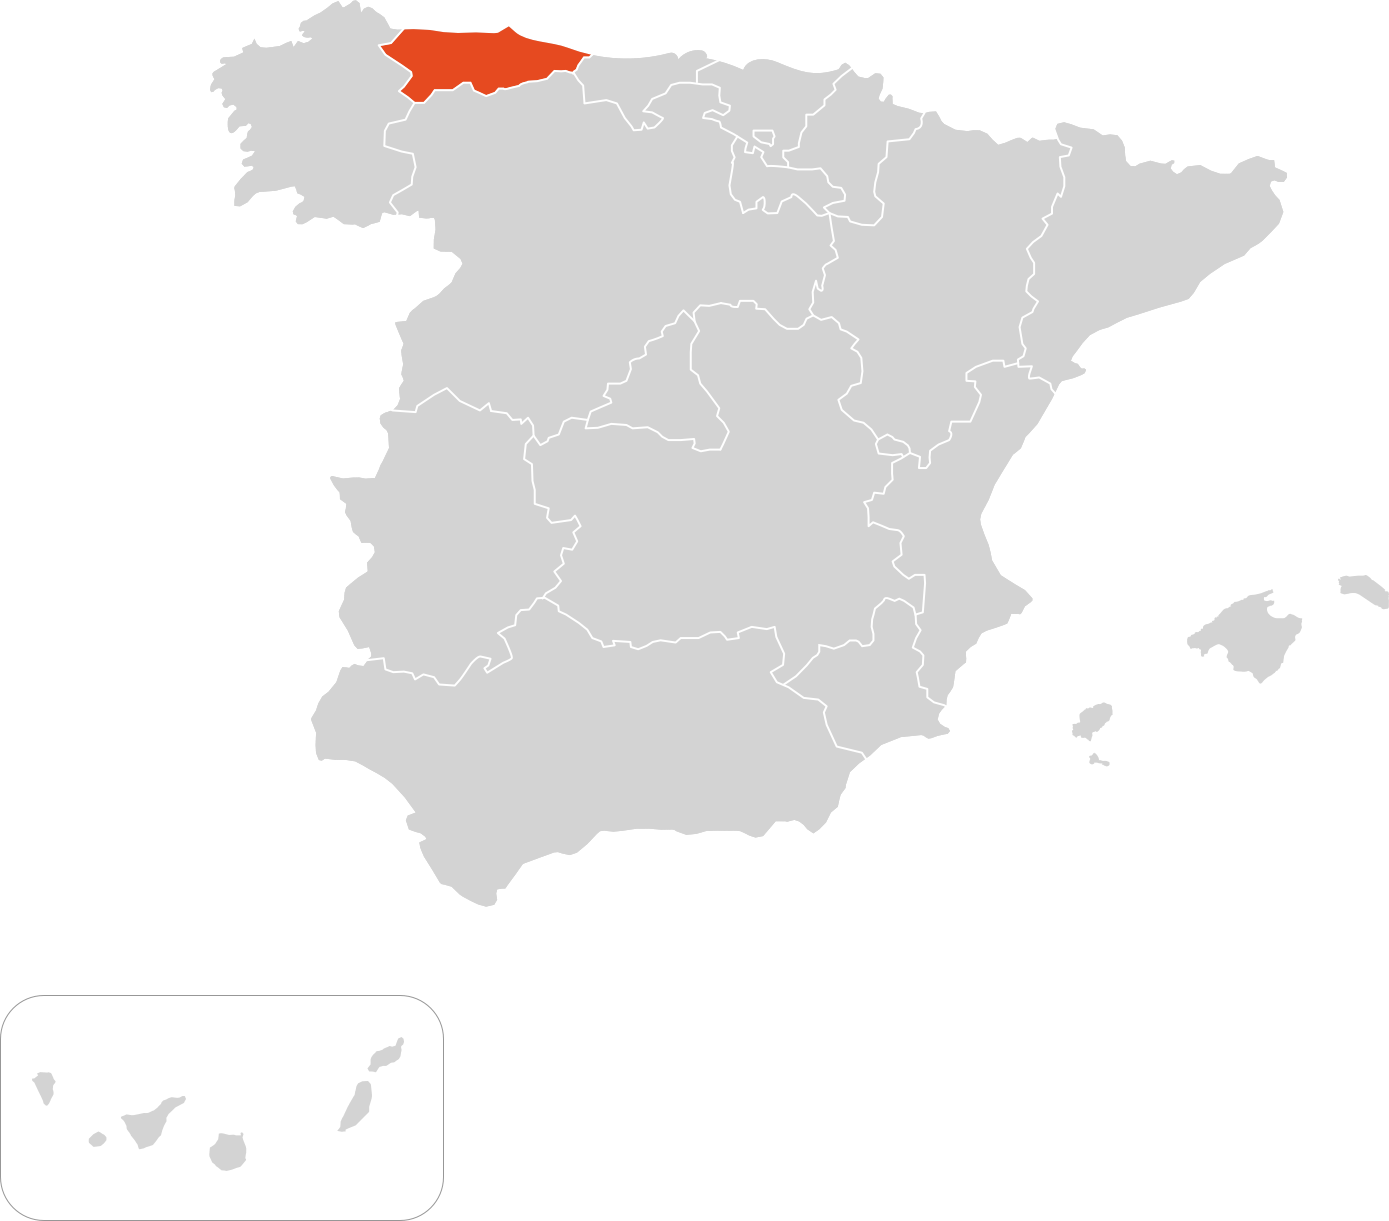 Principado de Asturias